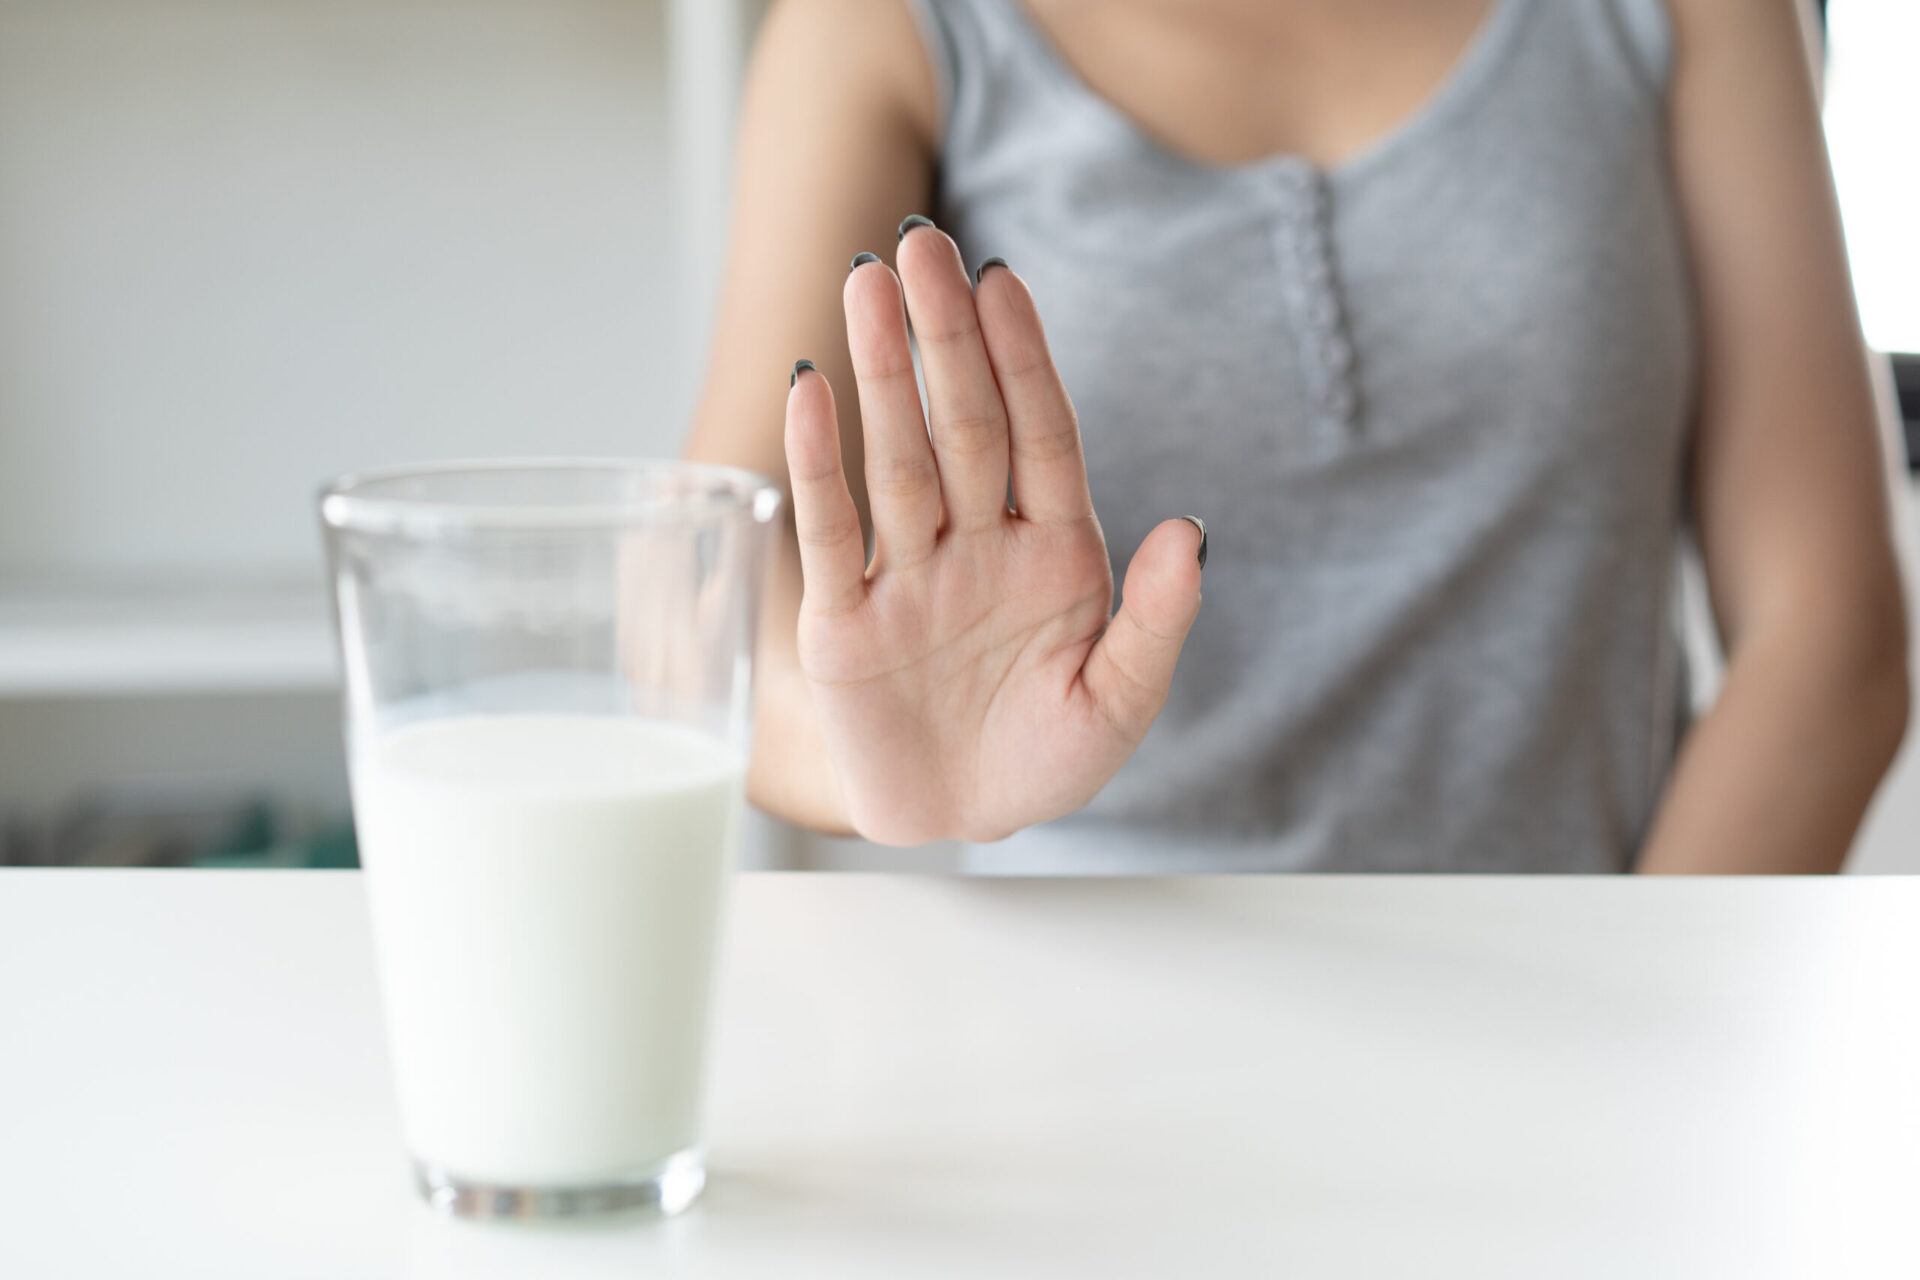 近年では牛乳や乳製品に関するリスクがあることが報告されています。

牛乳や乳製品は、今の現代人に様々な影響を及ぼしており、これに代わる代替品の普及が望まれています。
